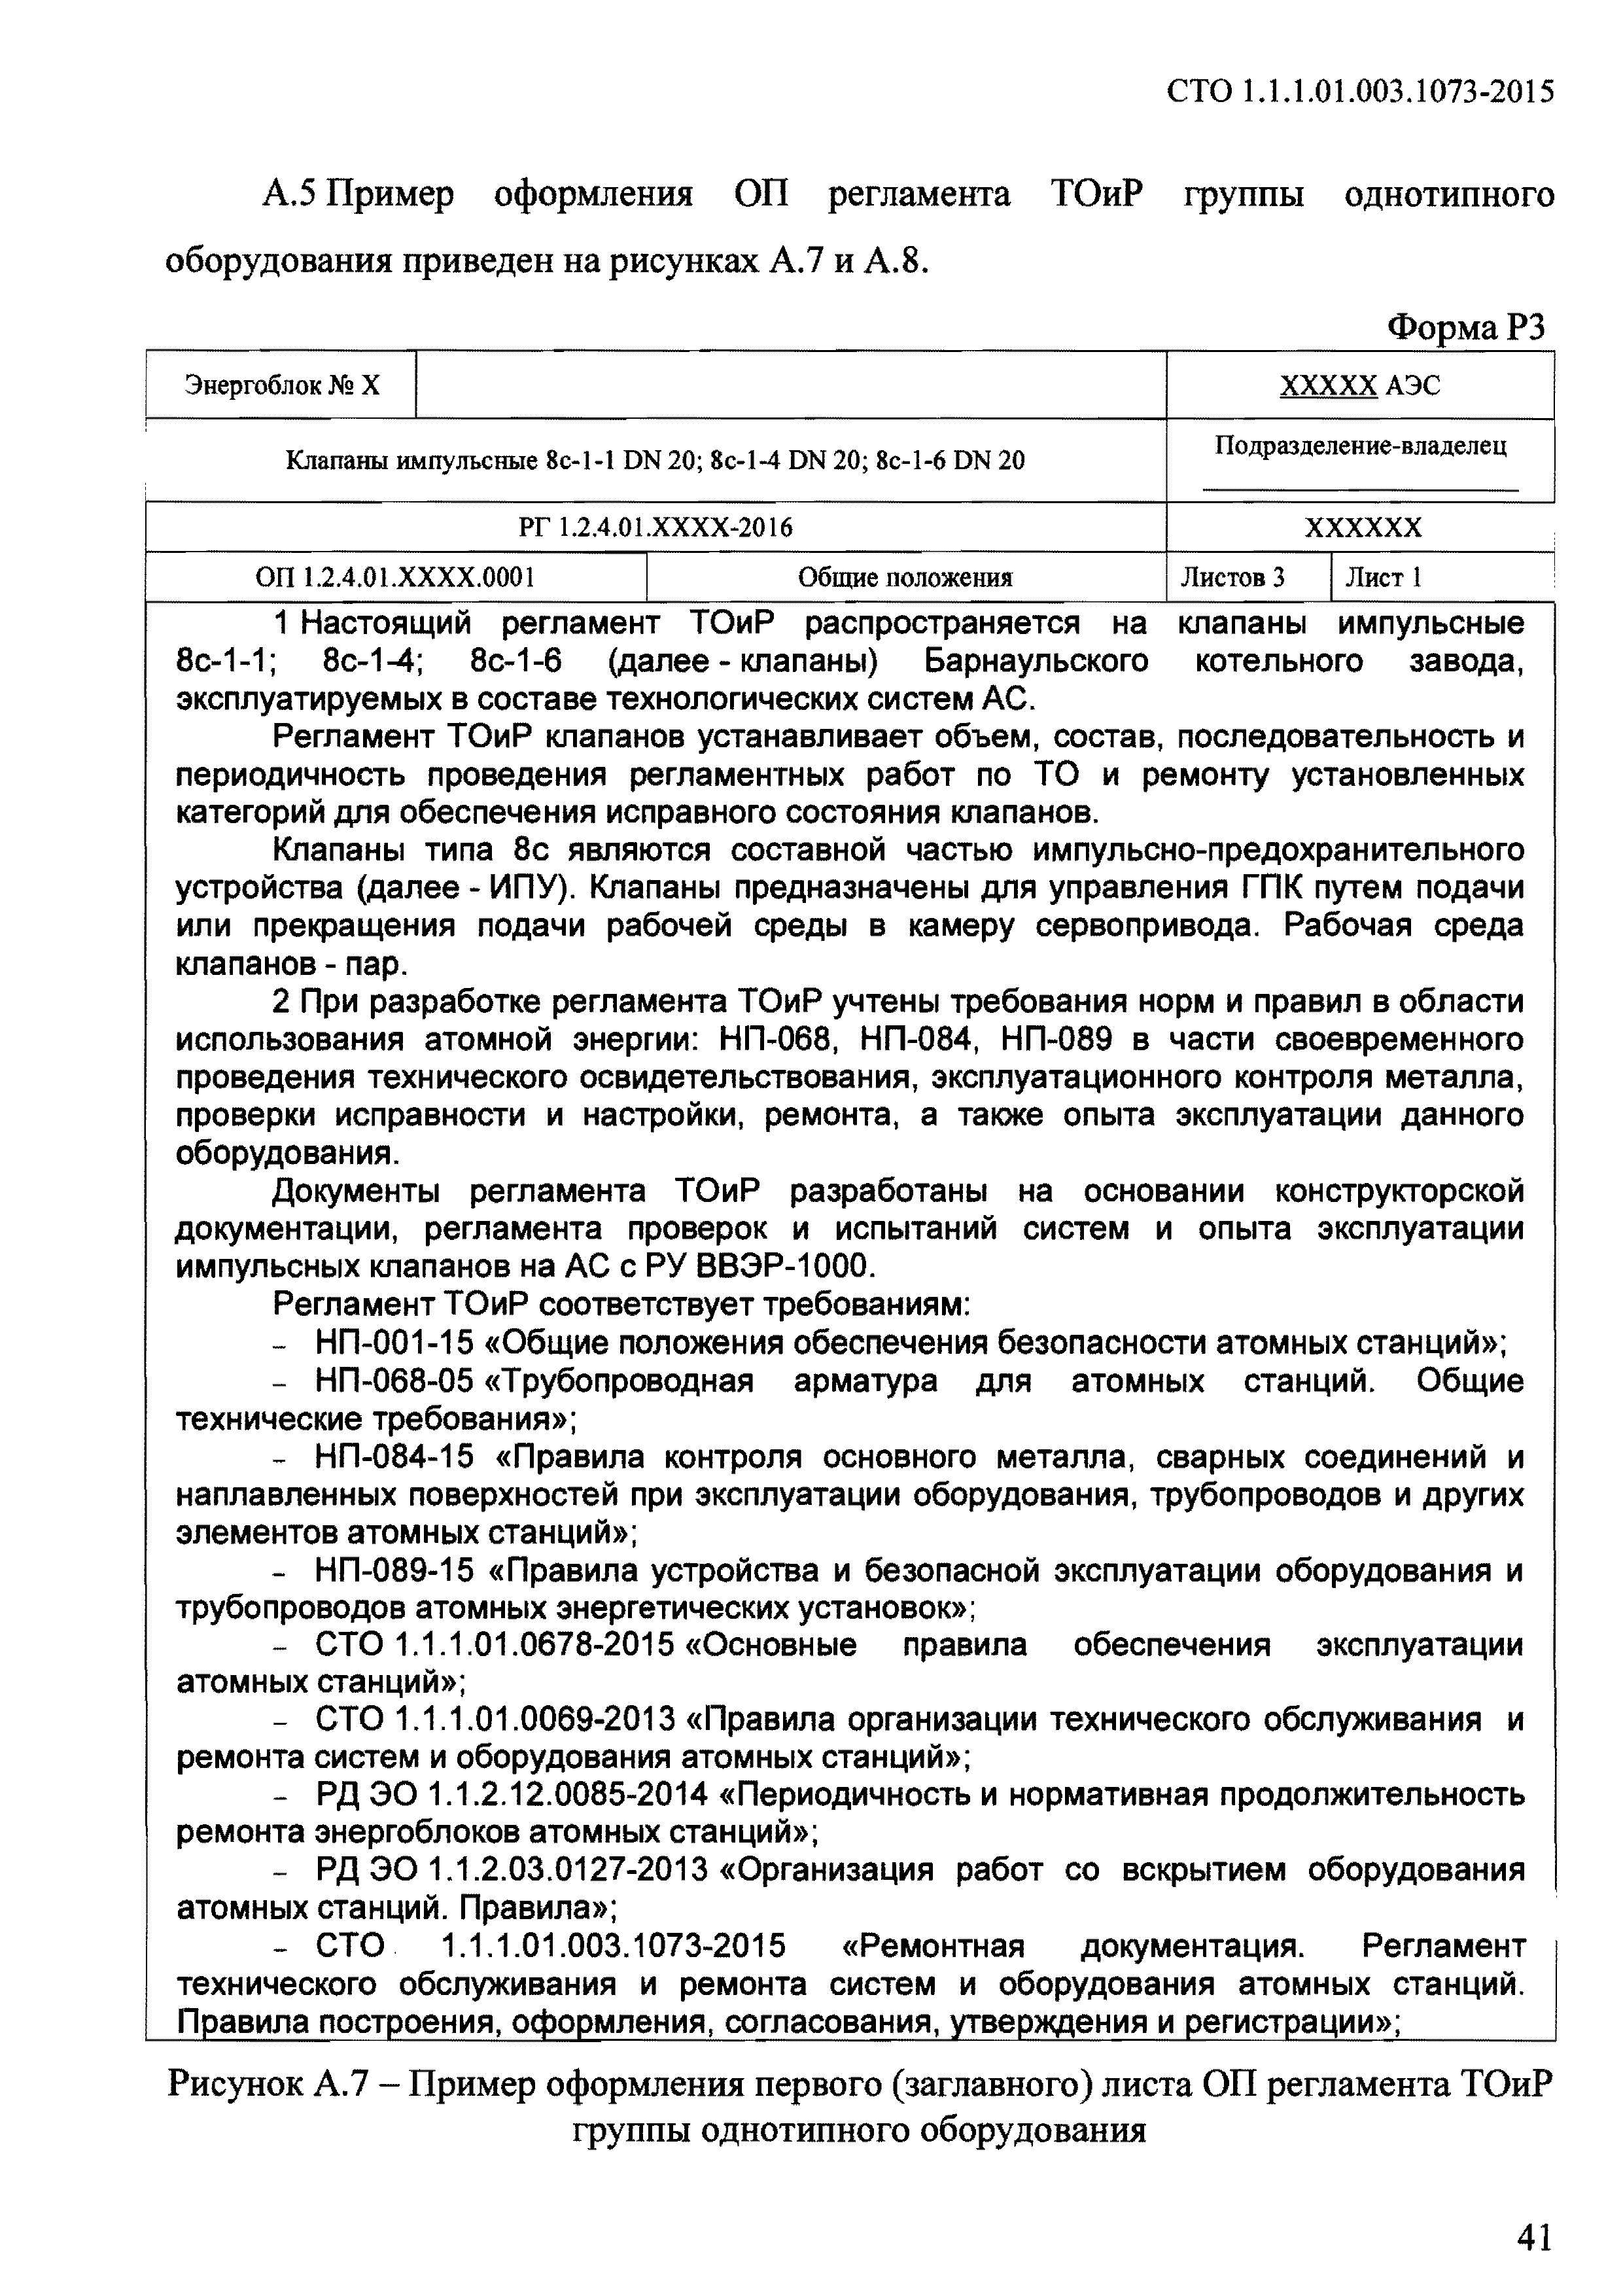 СТО 1.1.1.01.003.1073-2015